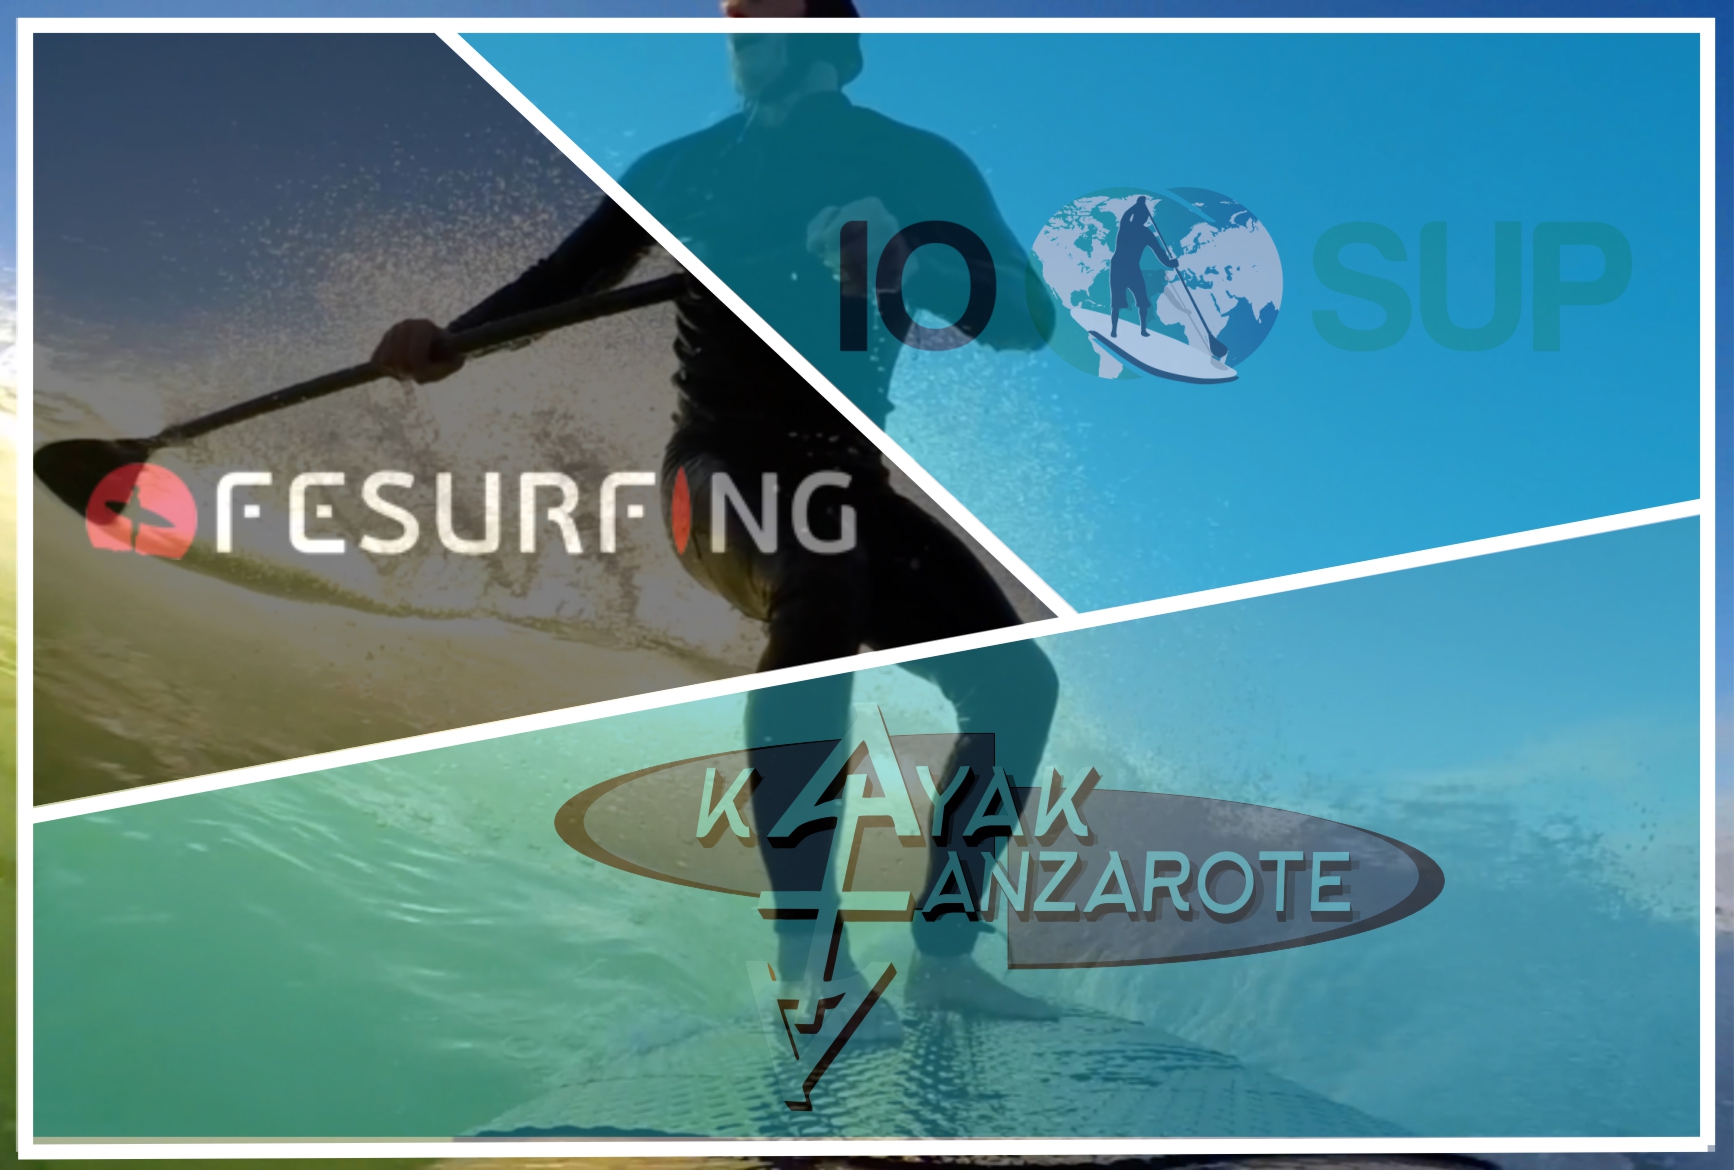 Imagen logotipos Kayaklanzarote, Iosup y fesurf